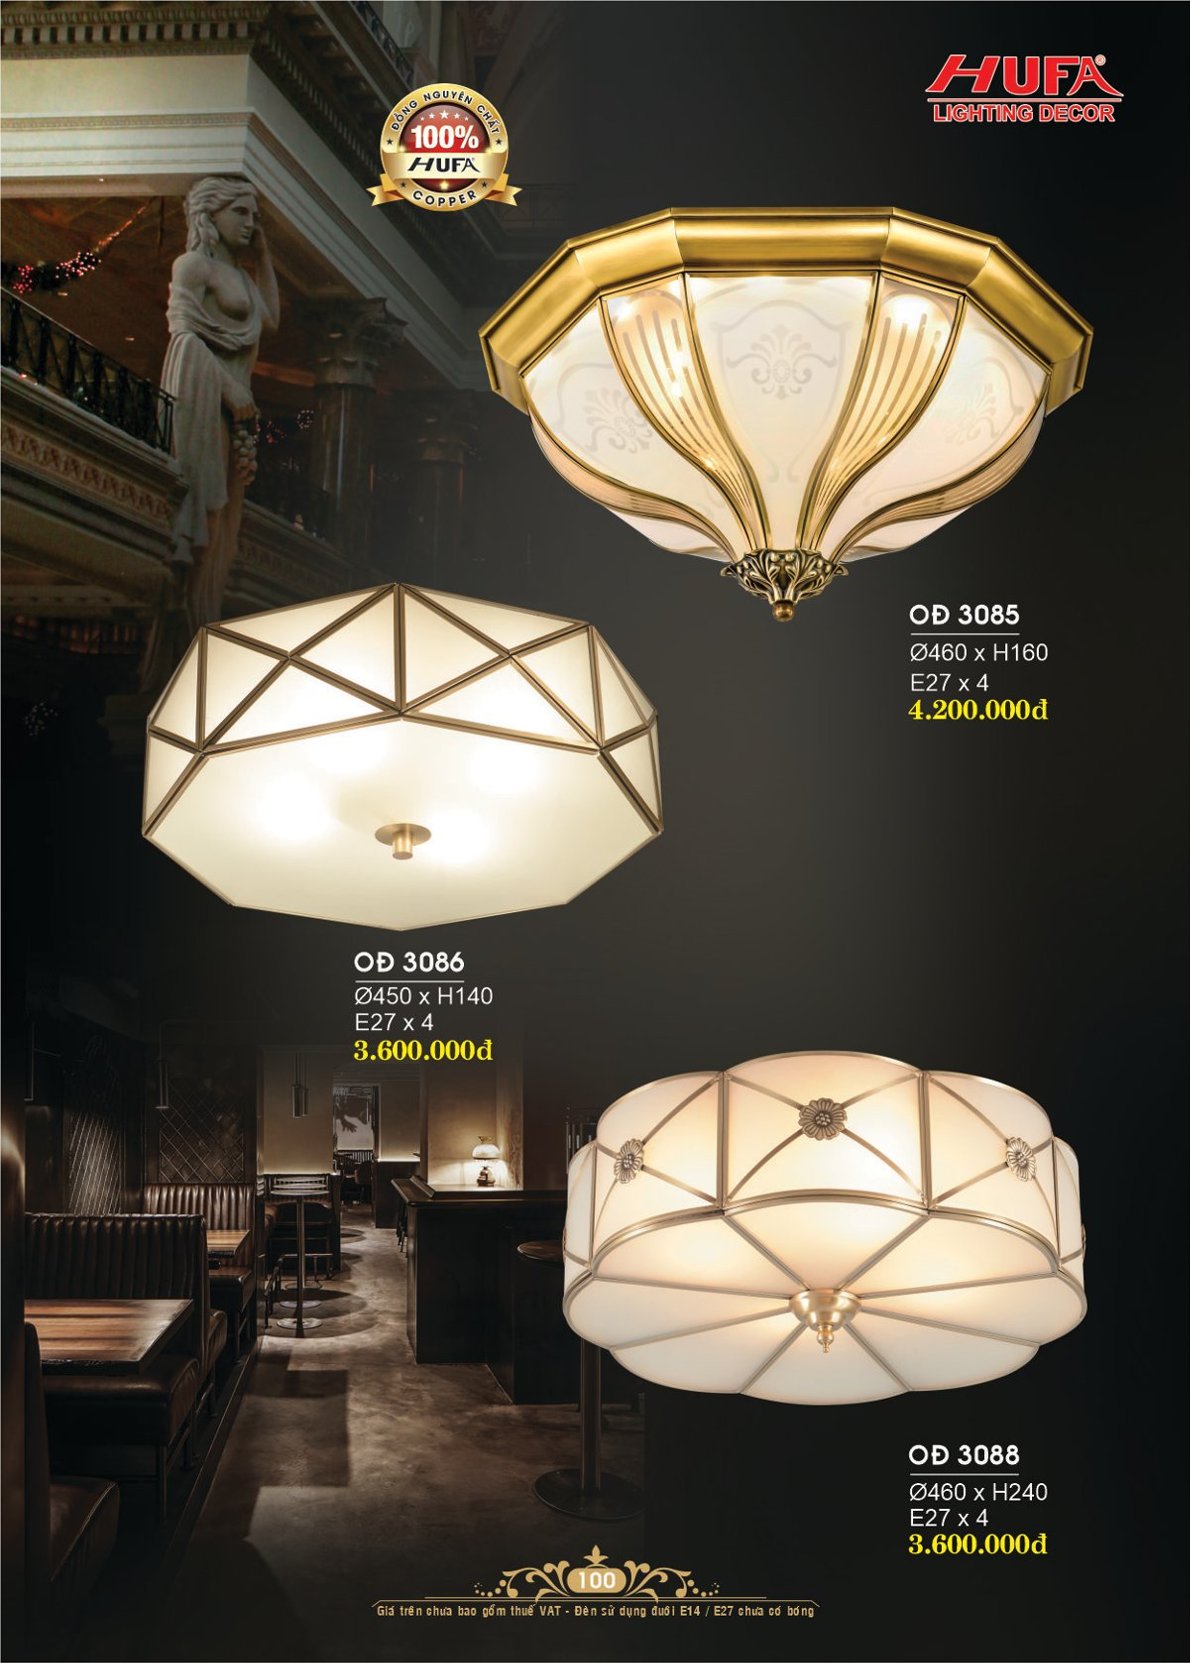 Đèn trang trí Hufa OĐ 3085, đèn ốp trần đồng nguyên chất, đèn ốp trần, đèn trang trí cao cấp sang trọng, chính hãng, nhiều mẫu để lựa chọn, chất lượng tốt